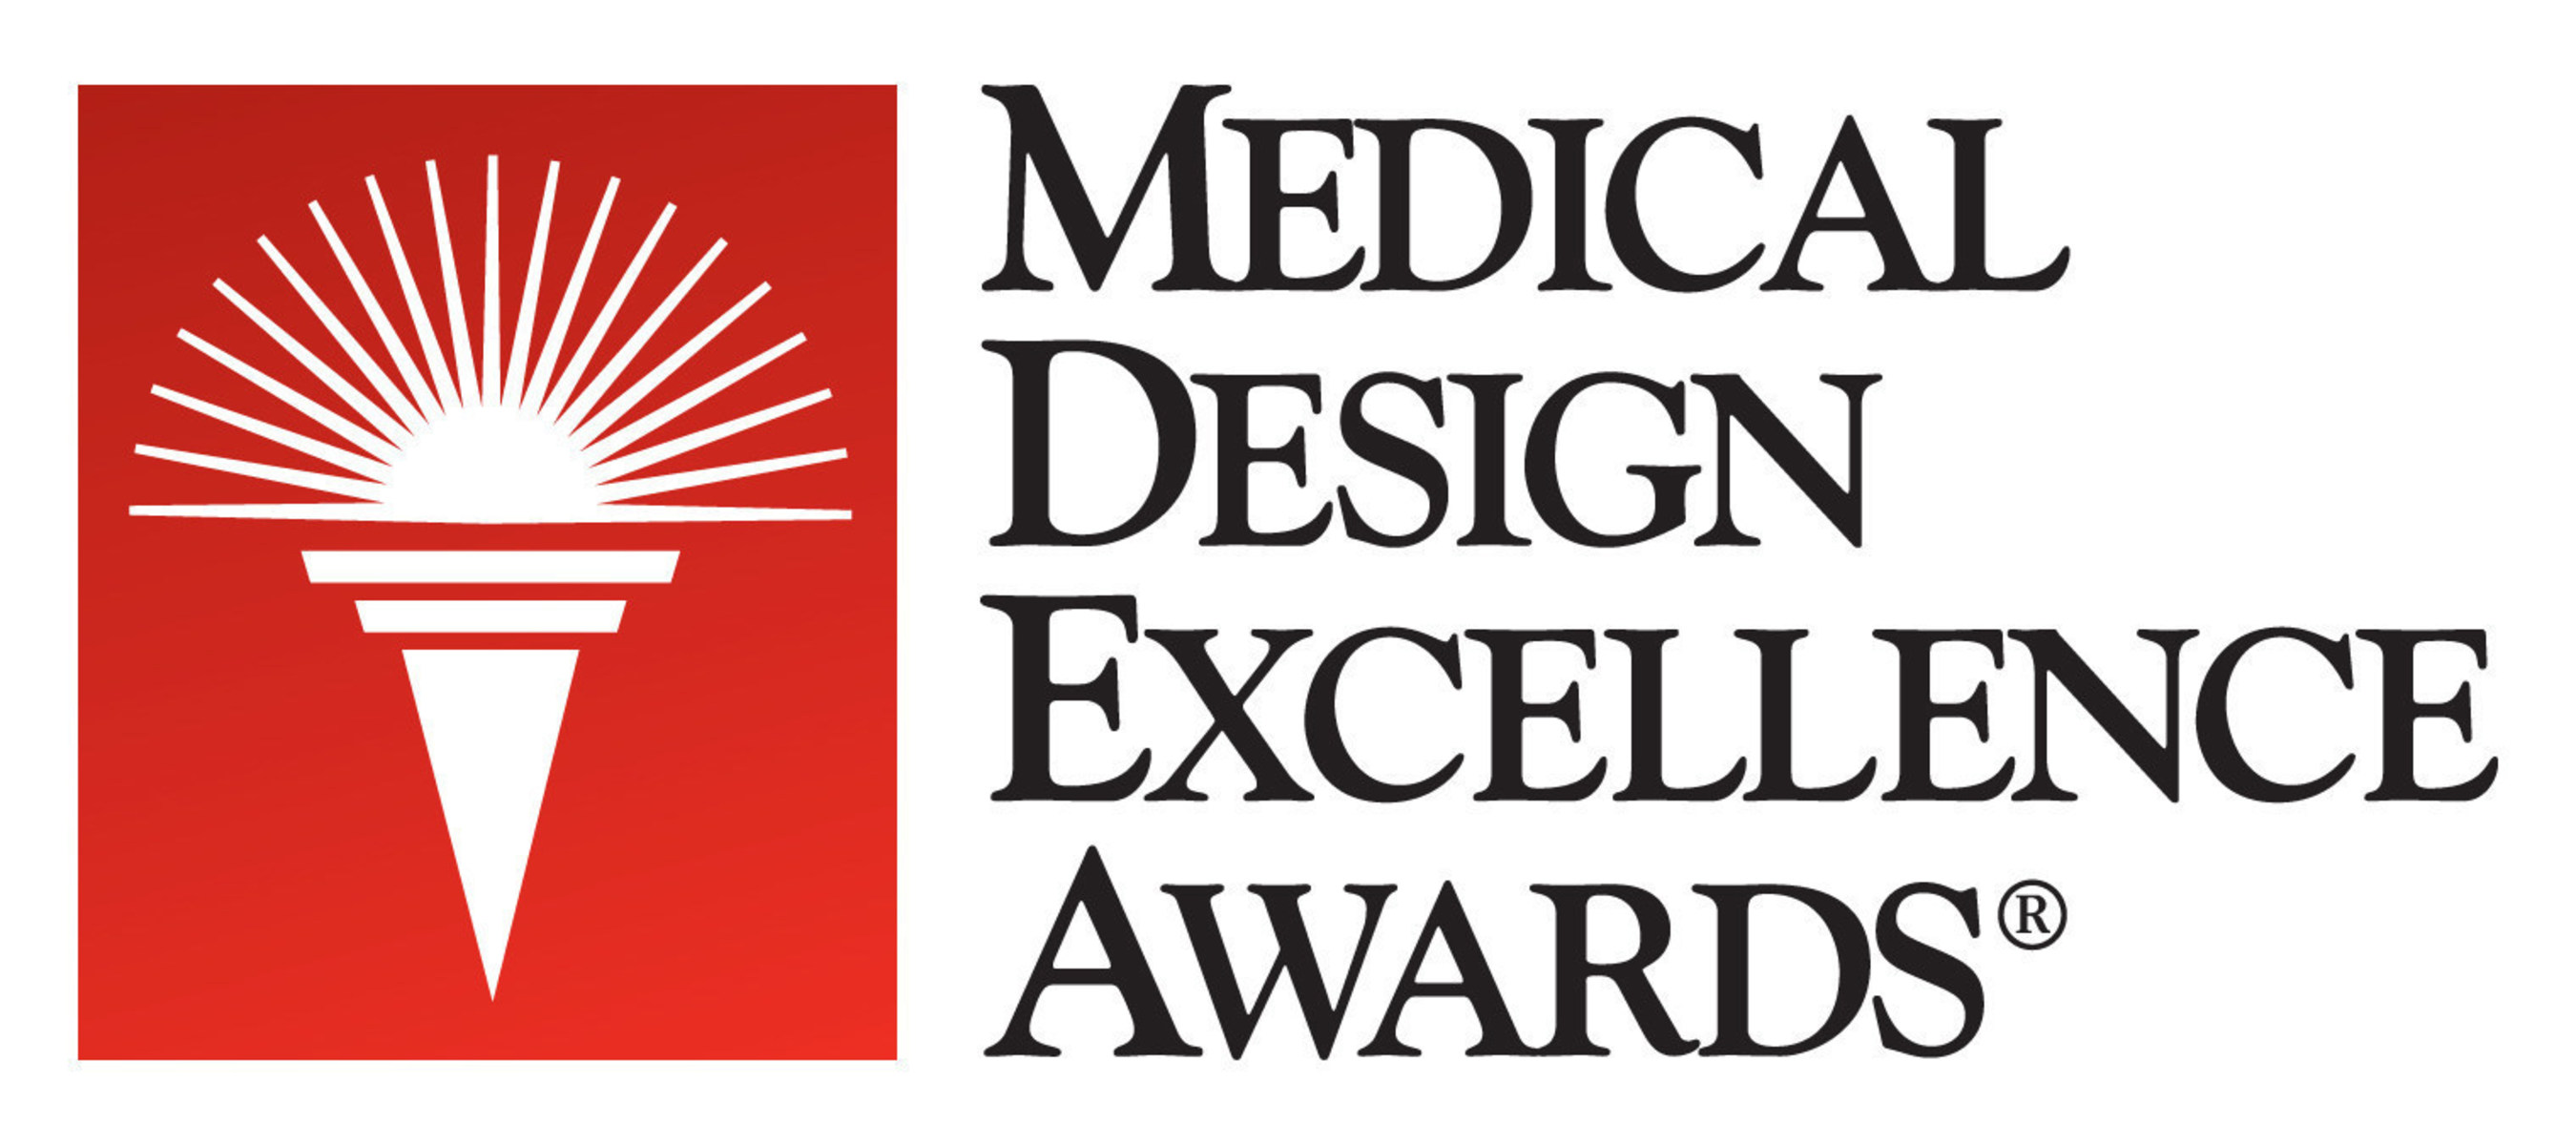 Medical Design Excellence Awards (MDEA)